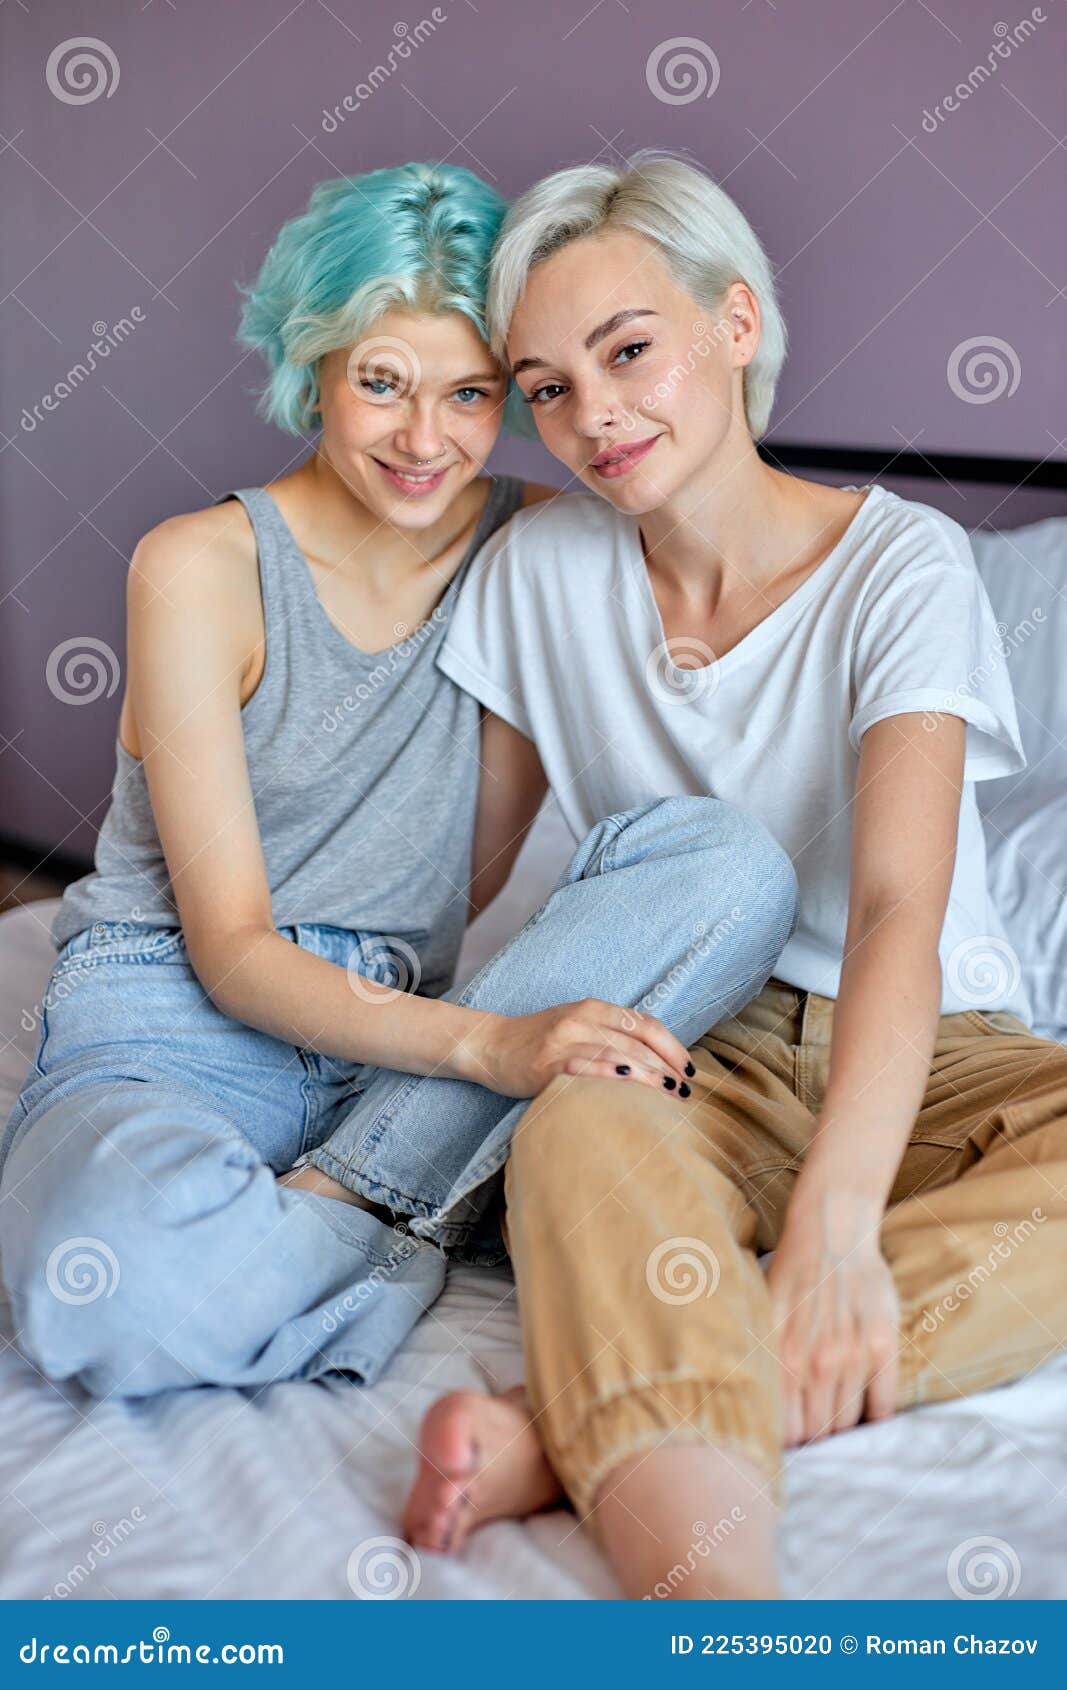 Lesbian Camera